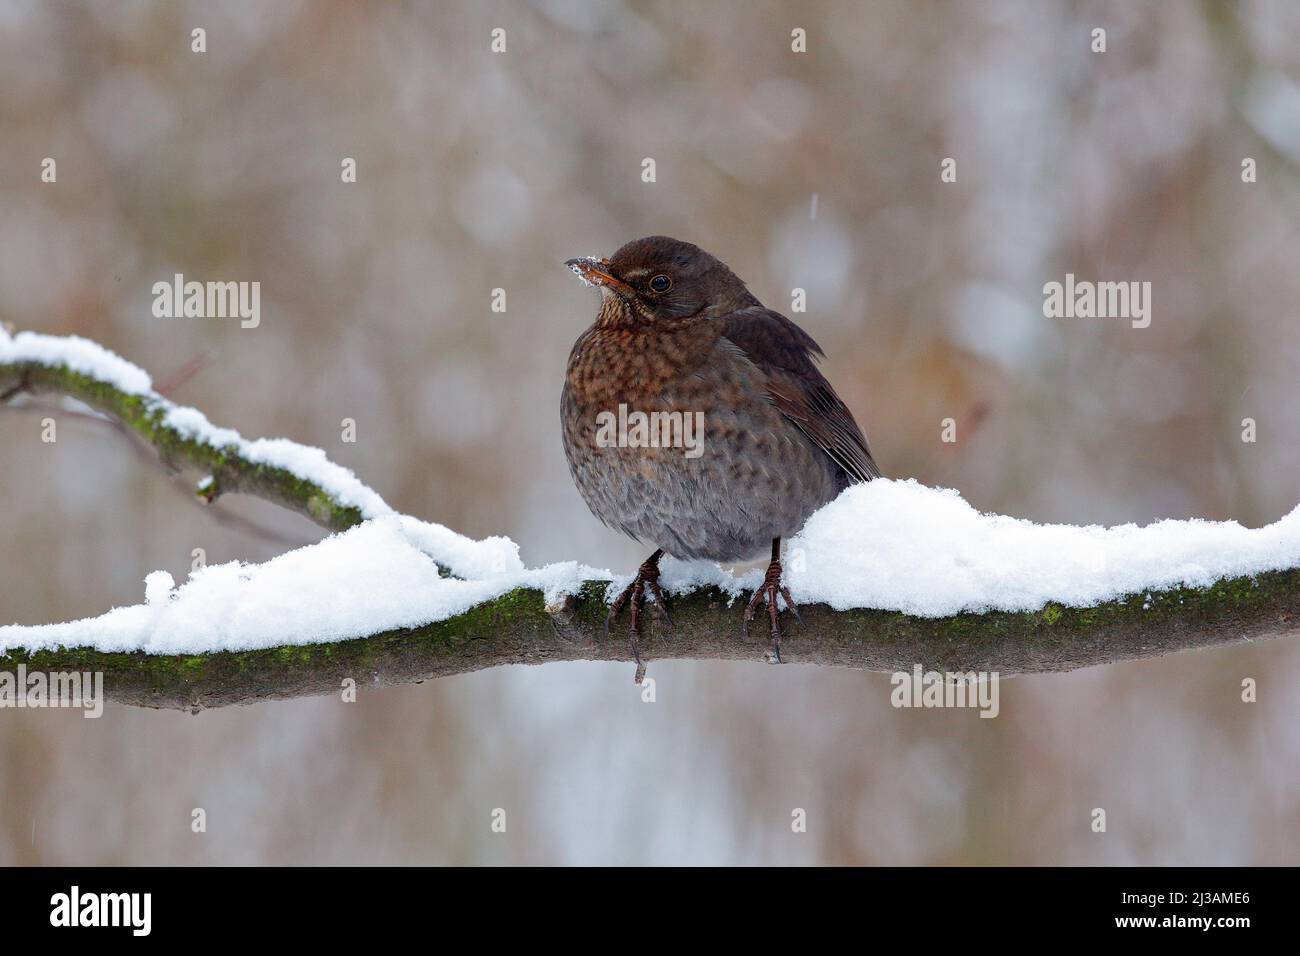 Uccello nero comune Blackbird, Turdus merula, seduto sul ramo con la neve. Inverno freddo in Europa. Neve sul ramo albero Foto Stock